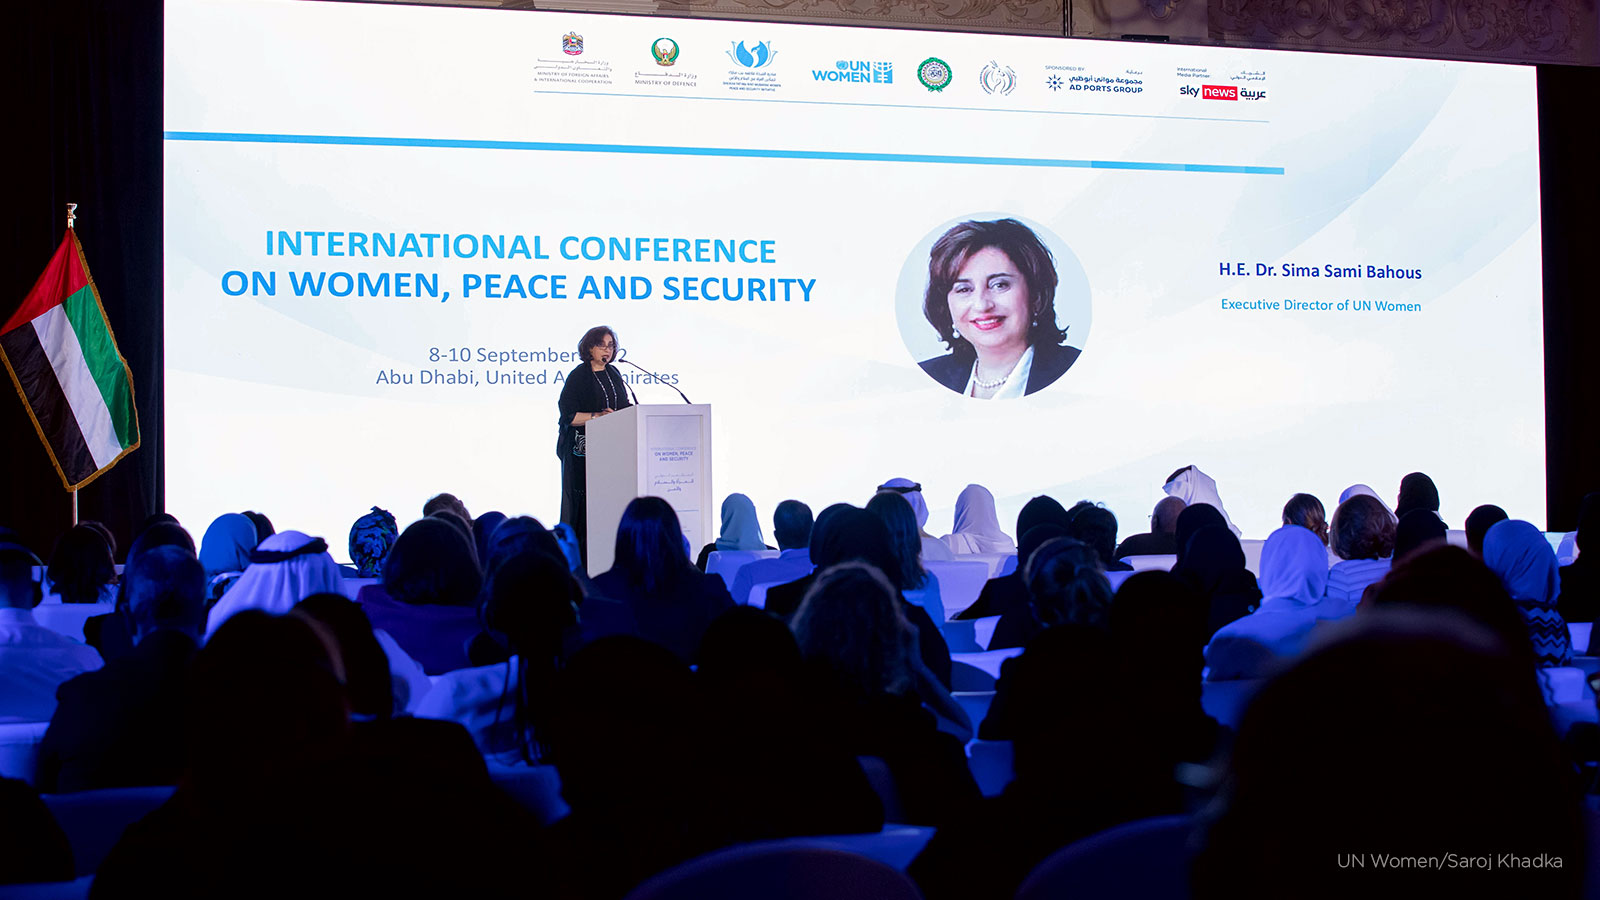 الكلمة الافتتاحية للمديرة التنفيذية لهيئة الأمم المتحدة للمرأة، سيما بحوث، في مؤتمر أبو ظبي الدولي للمرأة والسلام والأمن،  8 سبتمبر 2022 